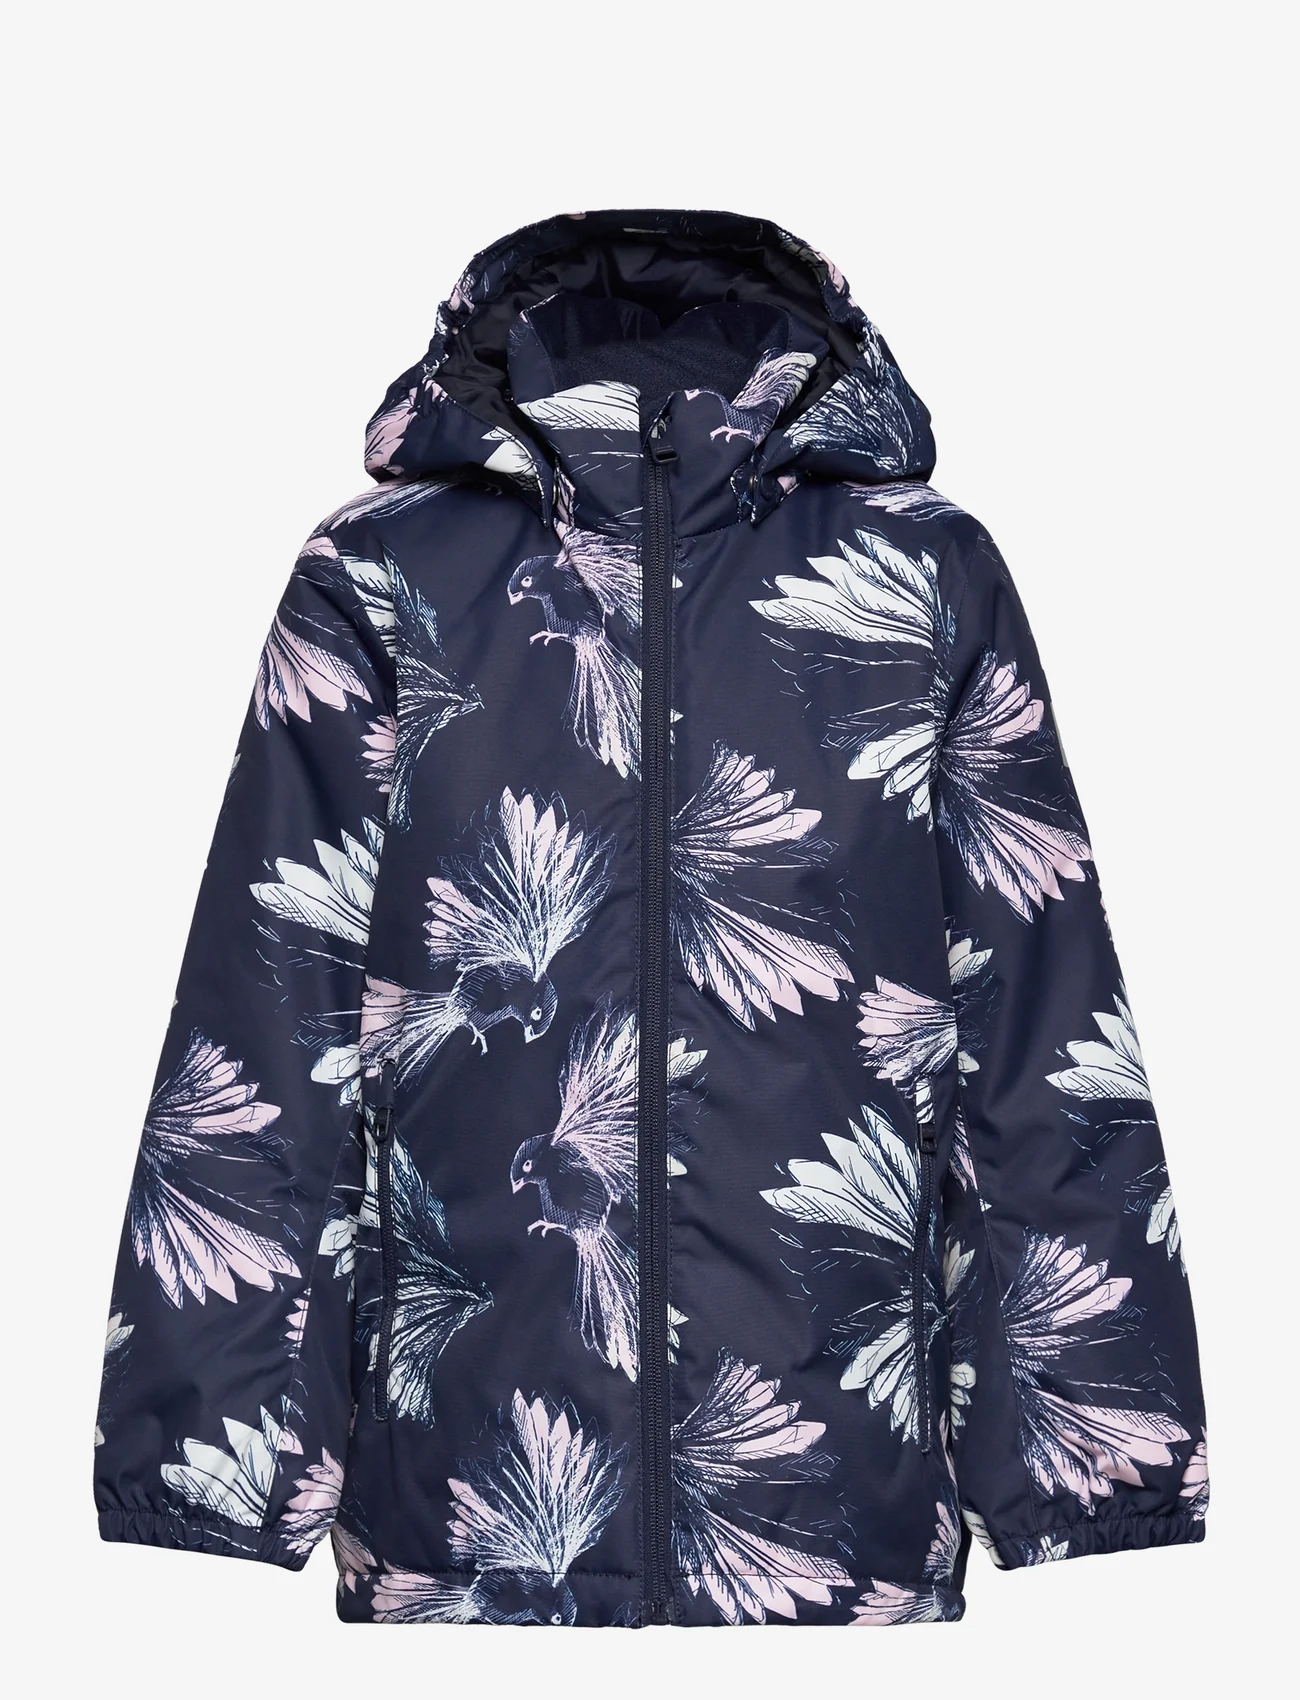 Reima - Winter jacket, Nuotio - winter jackets - navy - 0